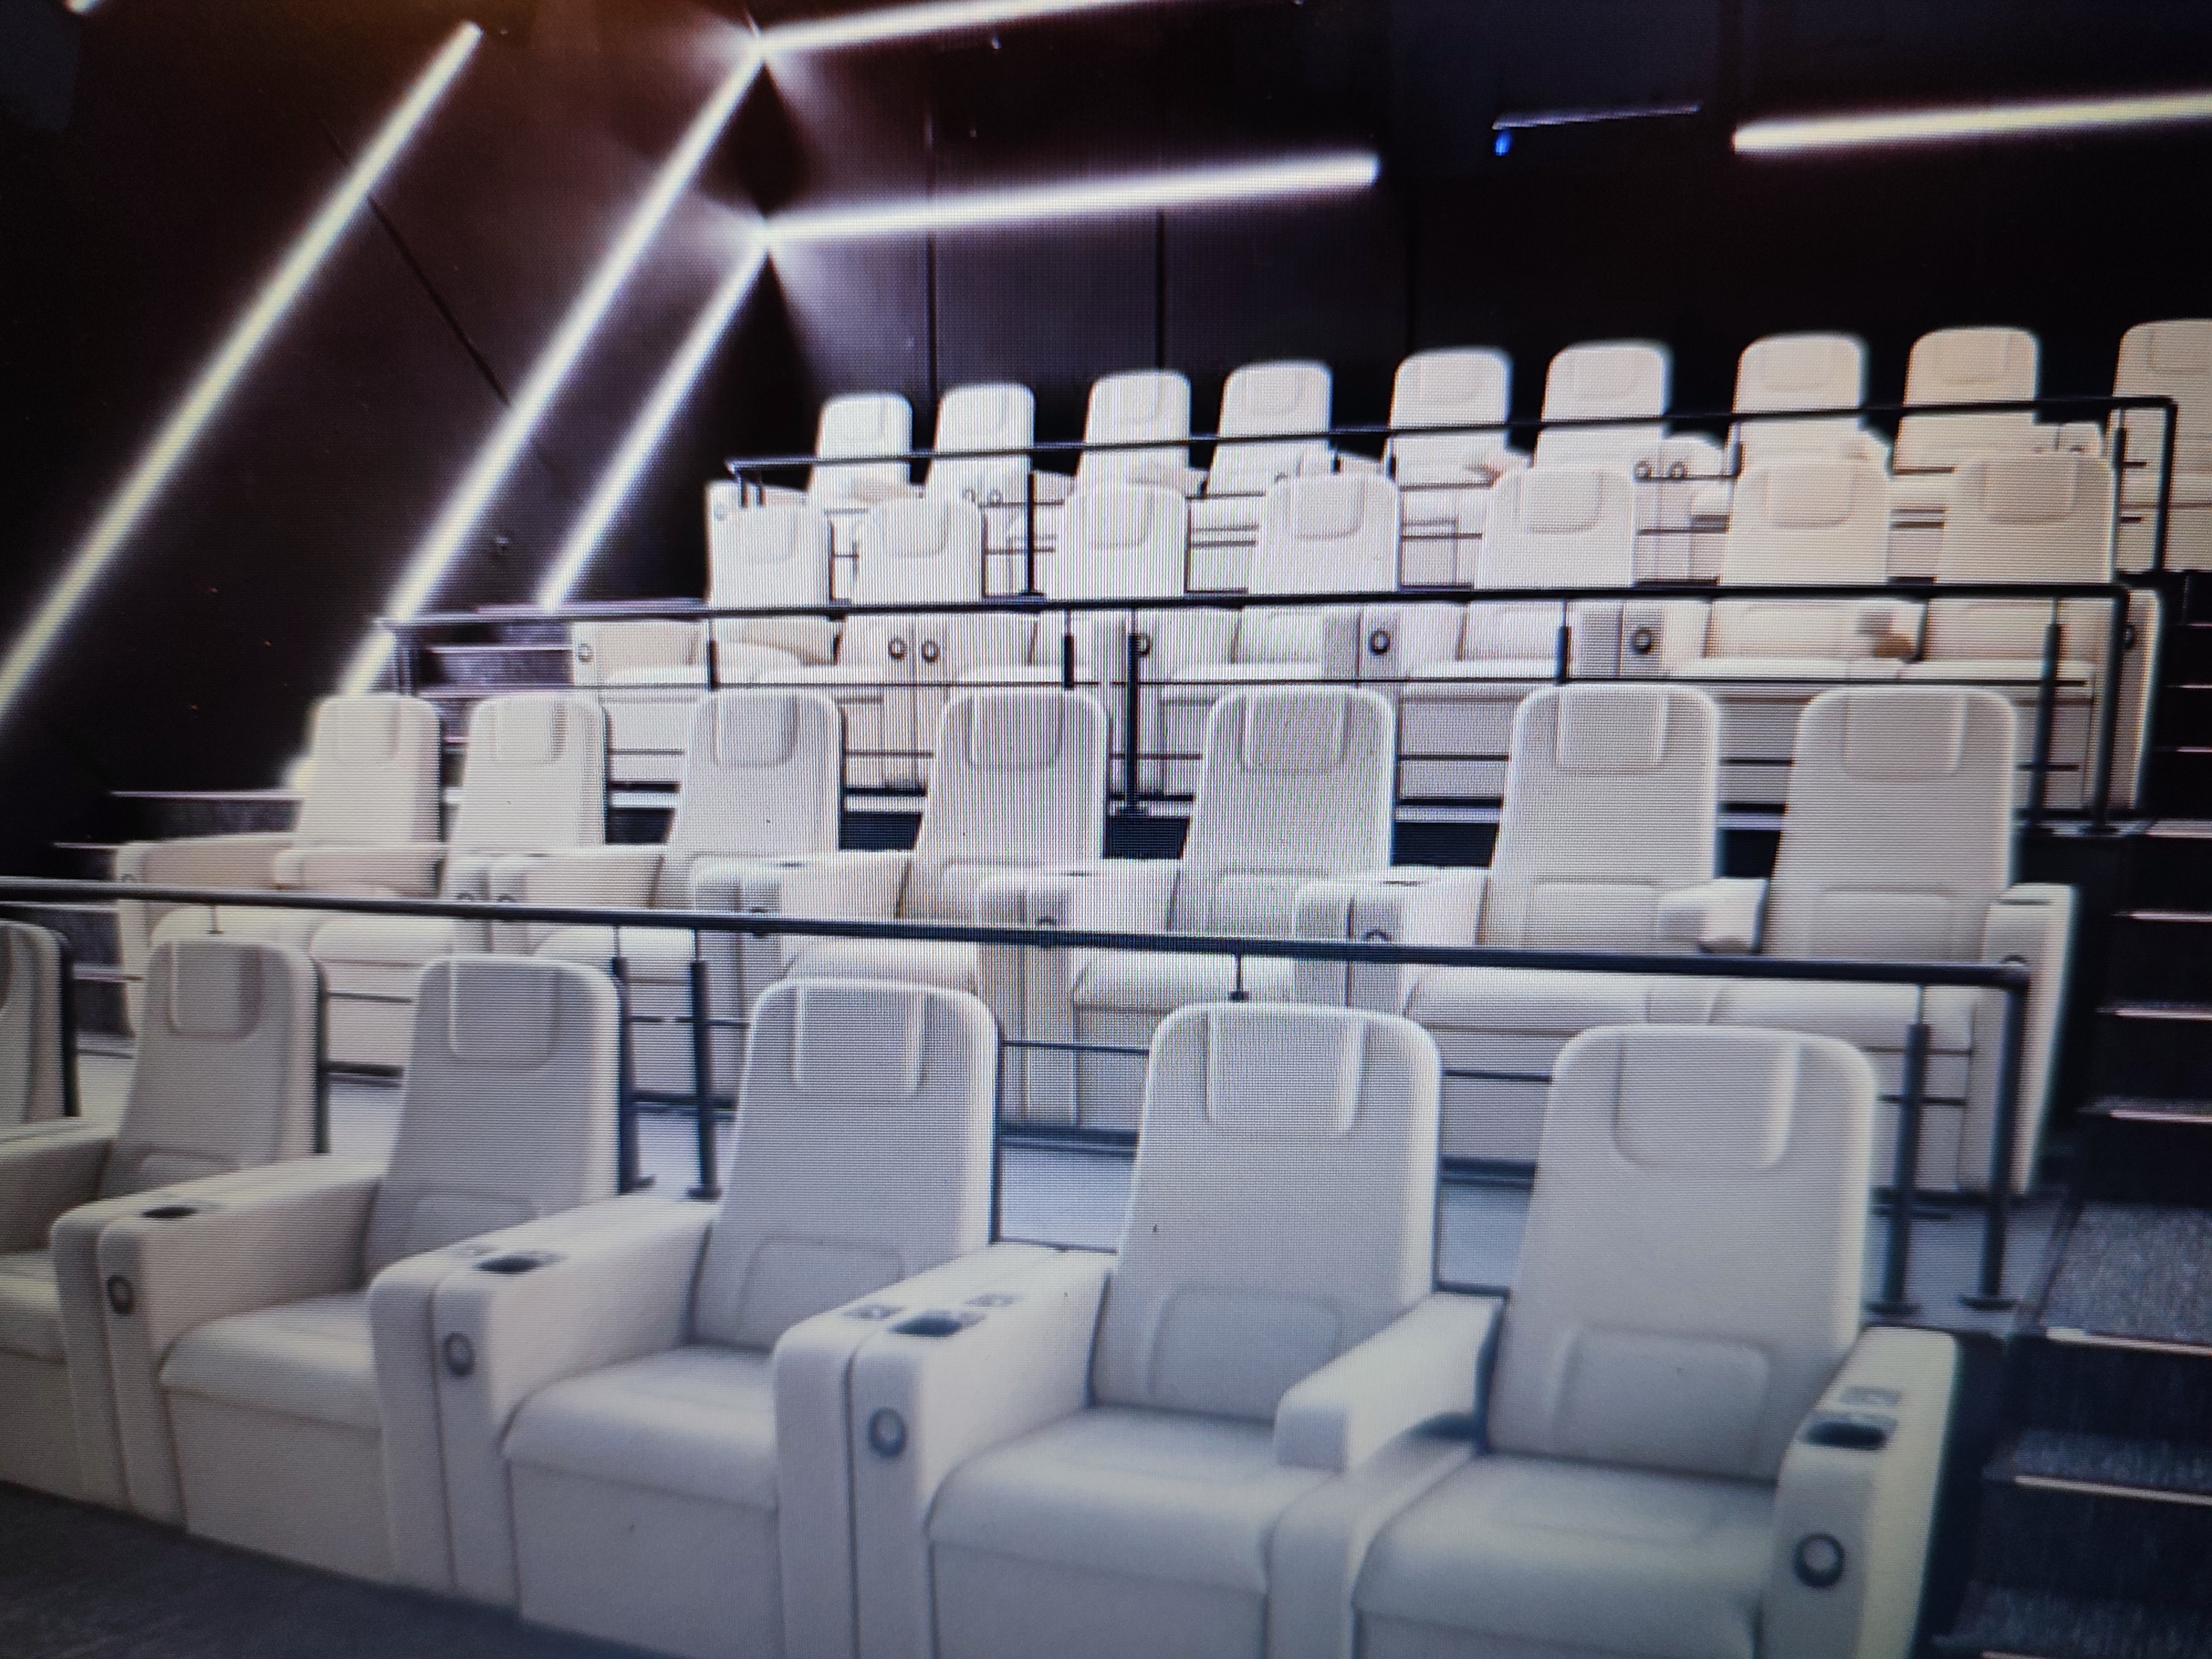 Каширская плаза кинотеатр расписание сеансов на сегодня. Киномакс Титан зал 10. Киномакс Титан Каширская Плаза вип зал.